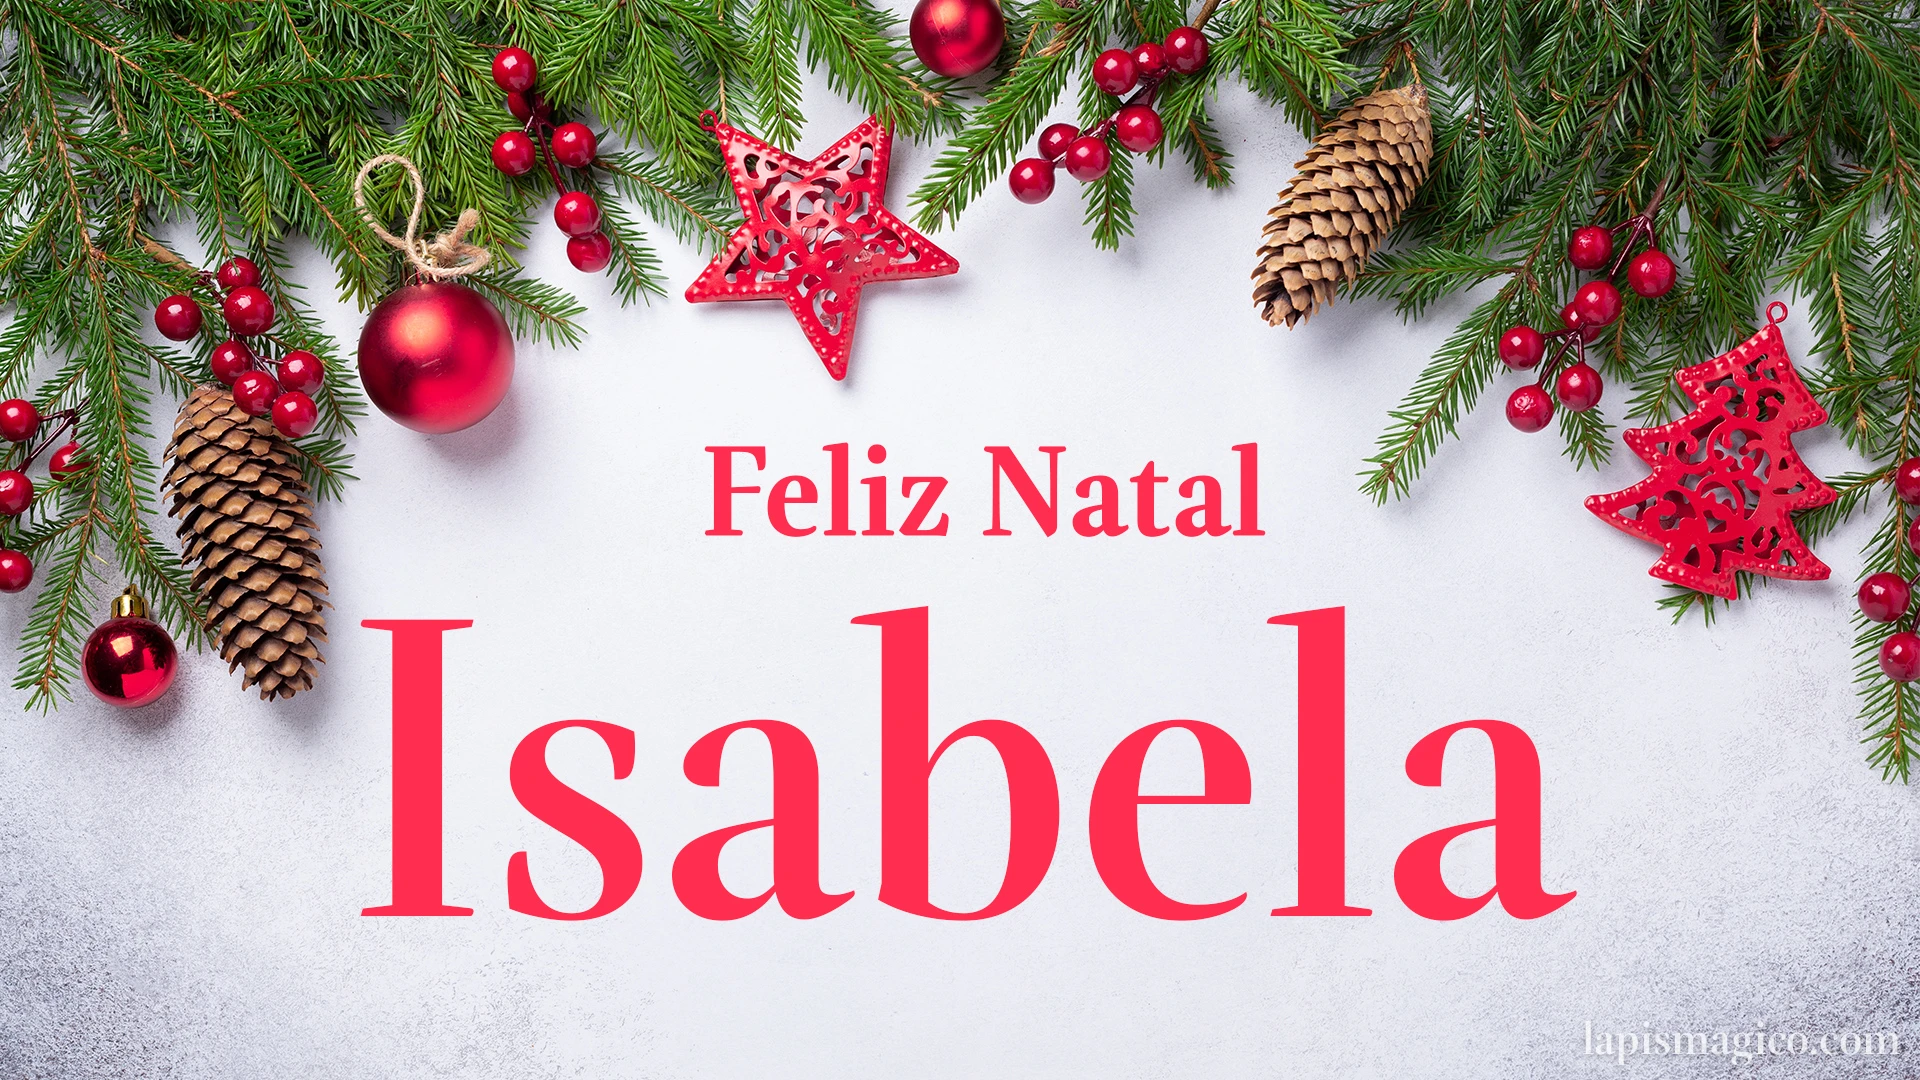 Oh Isabela, cinco postais de Feliz Natal Postal com o teu nome